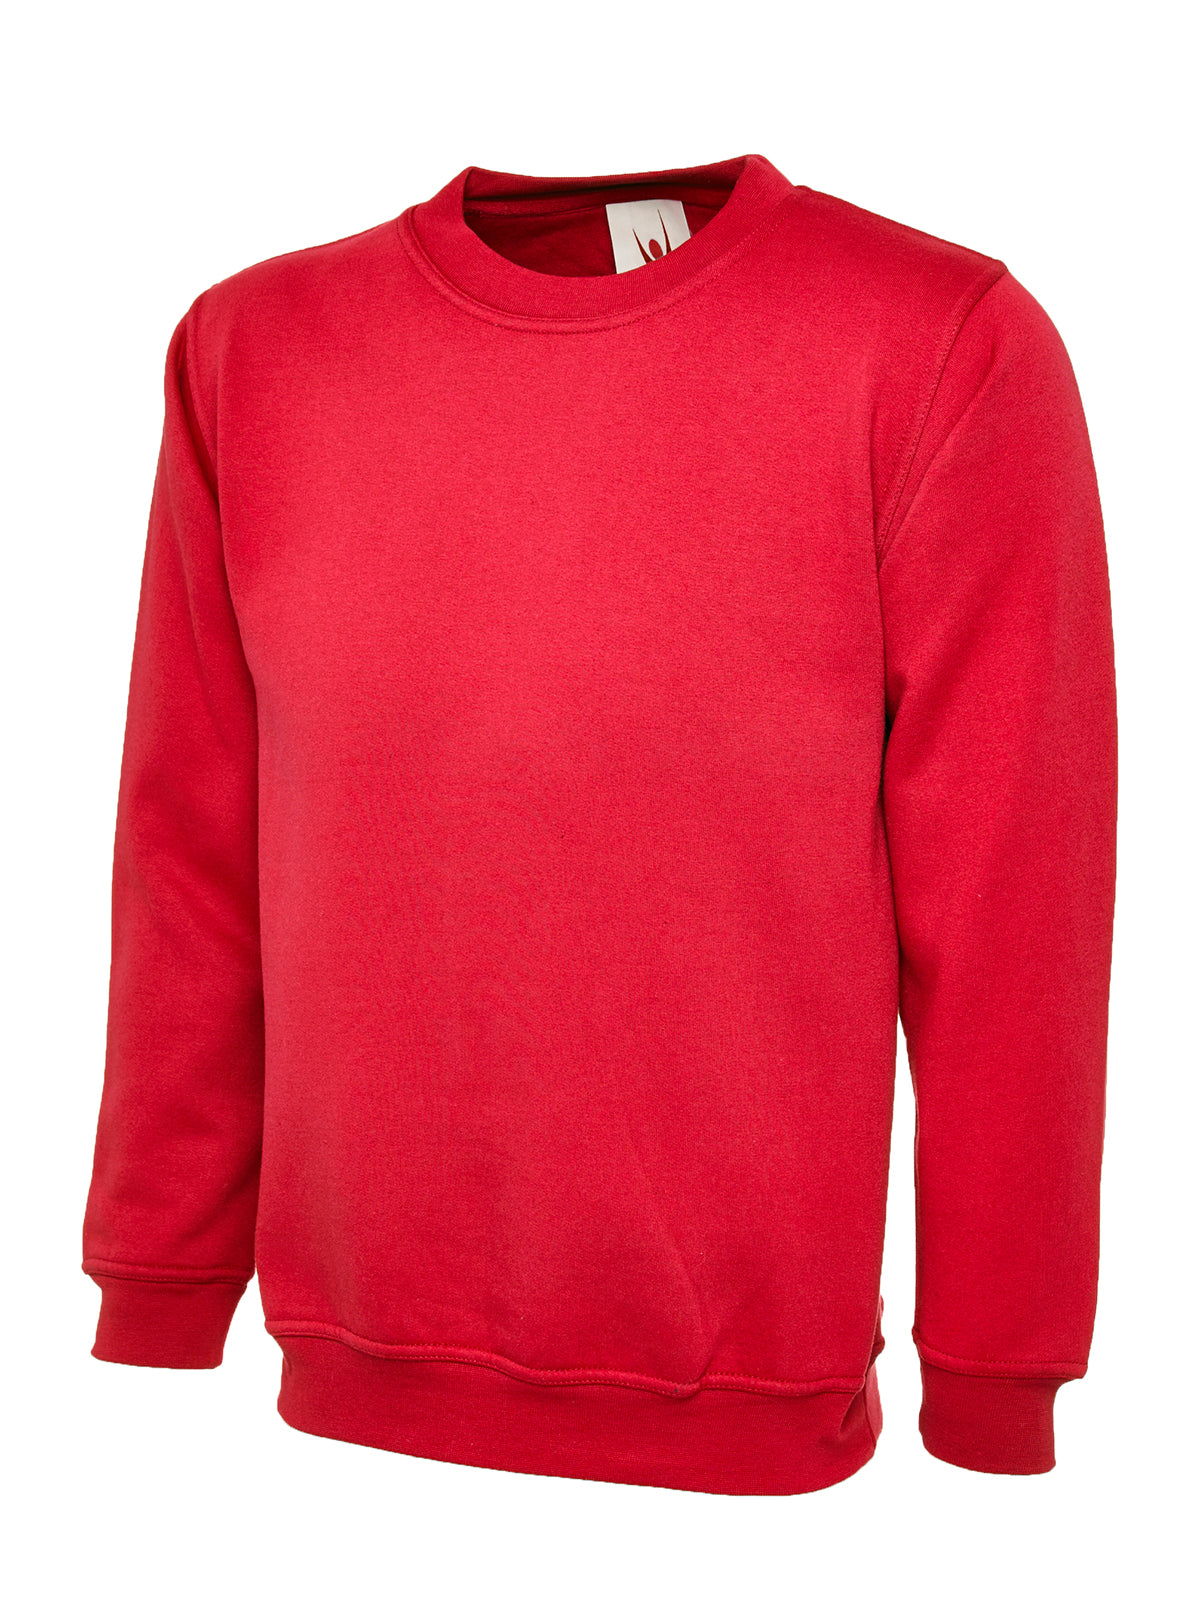 Uneek Olympic Sweatshirt UC205 - Red